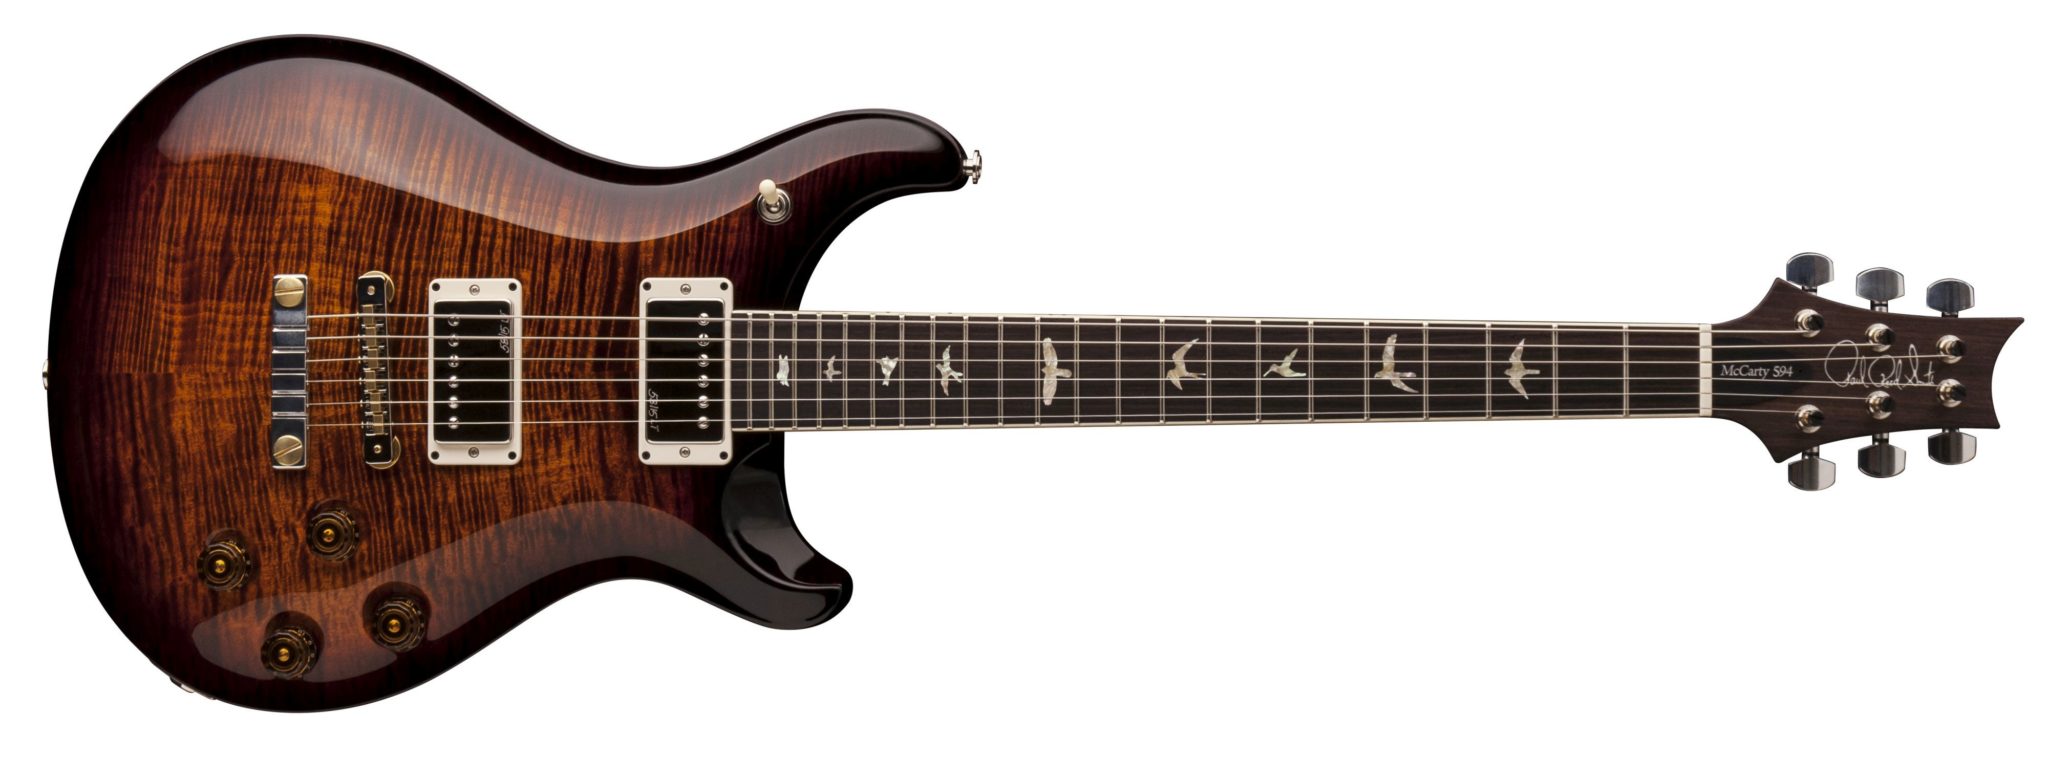 PRS 594 E-Gitarre in der Farbe Black Gold Wrap Burst